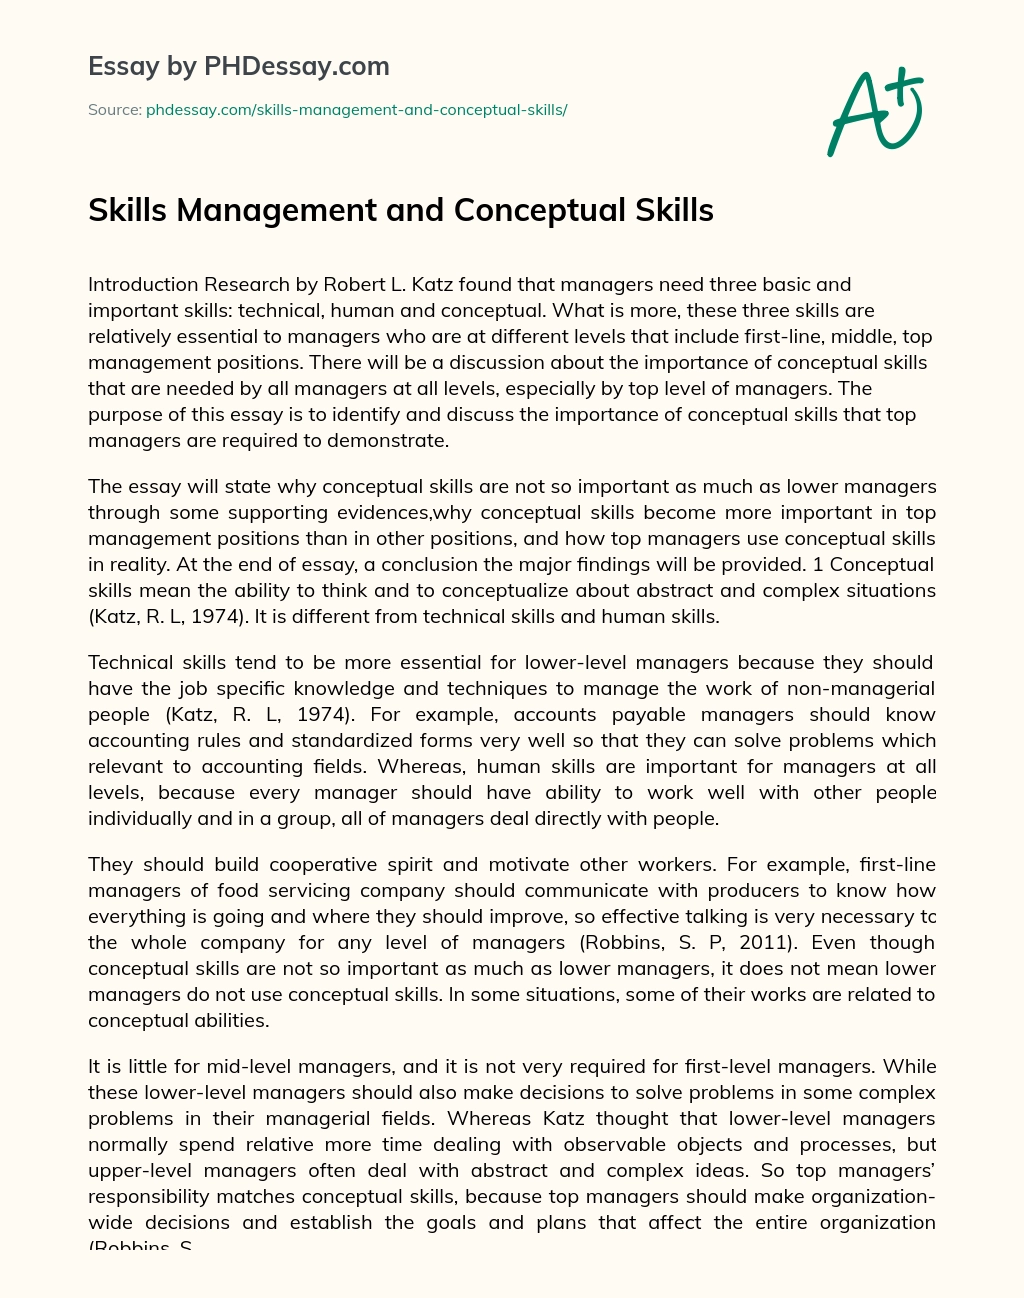 Skills Management and Conceptual Skills essay